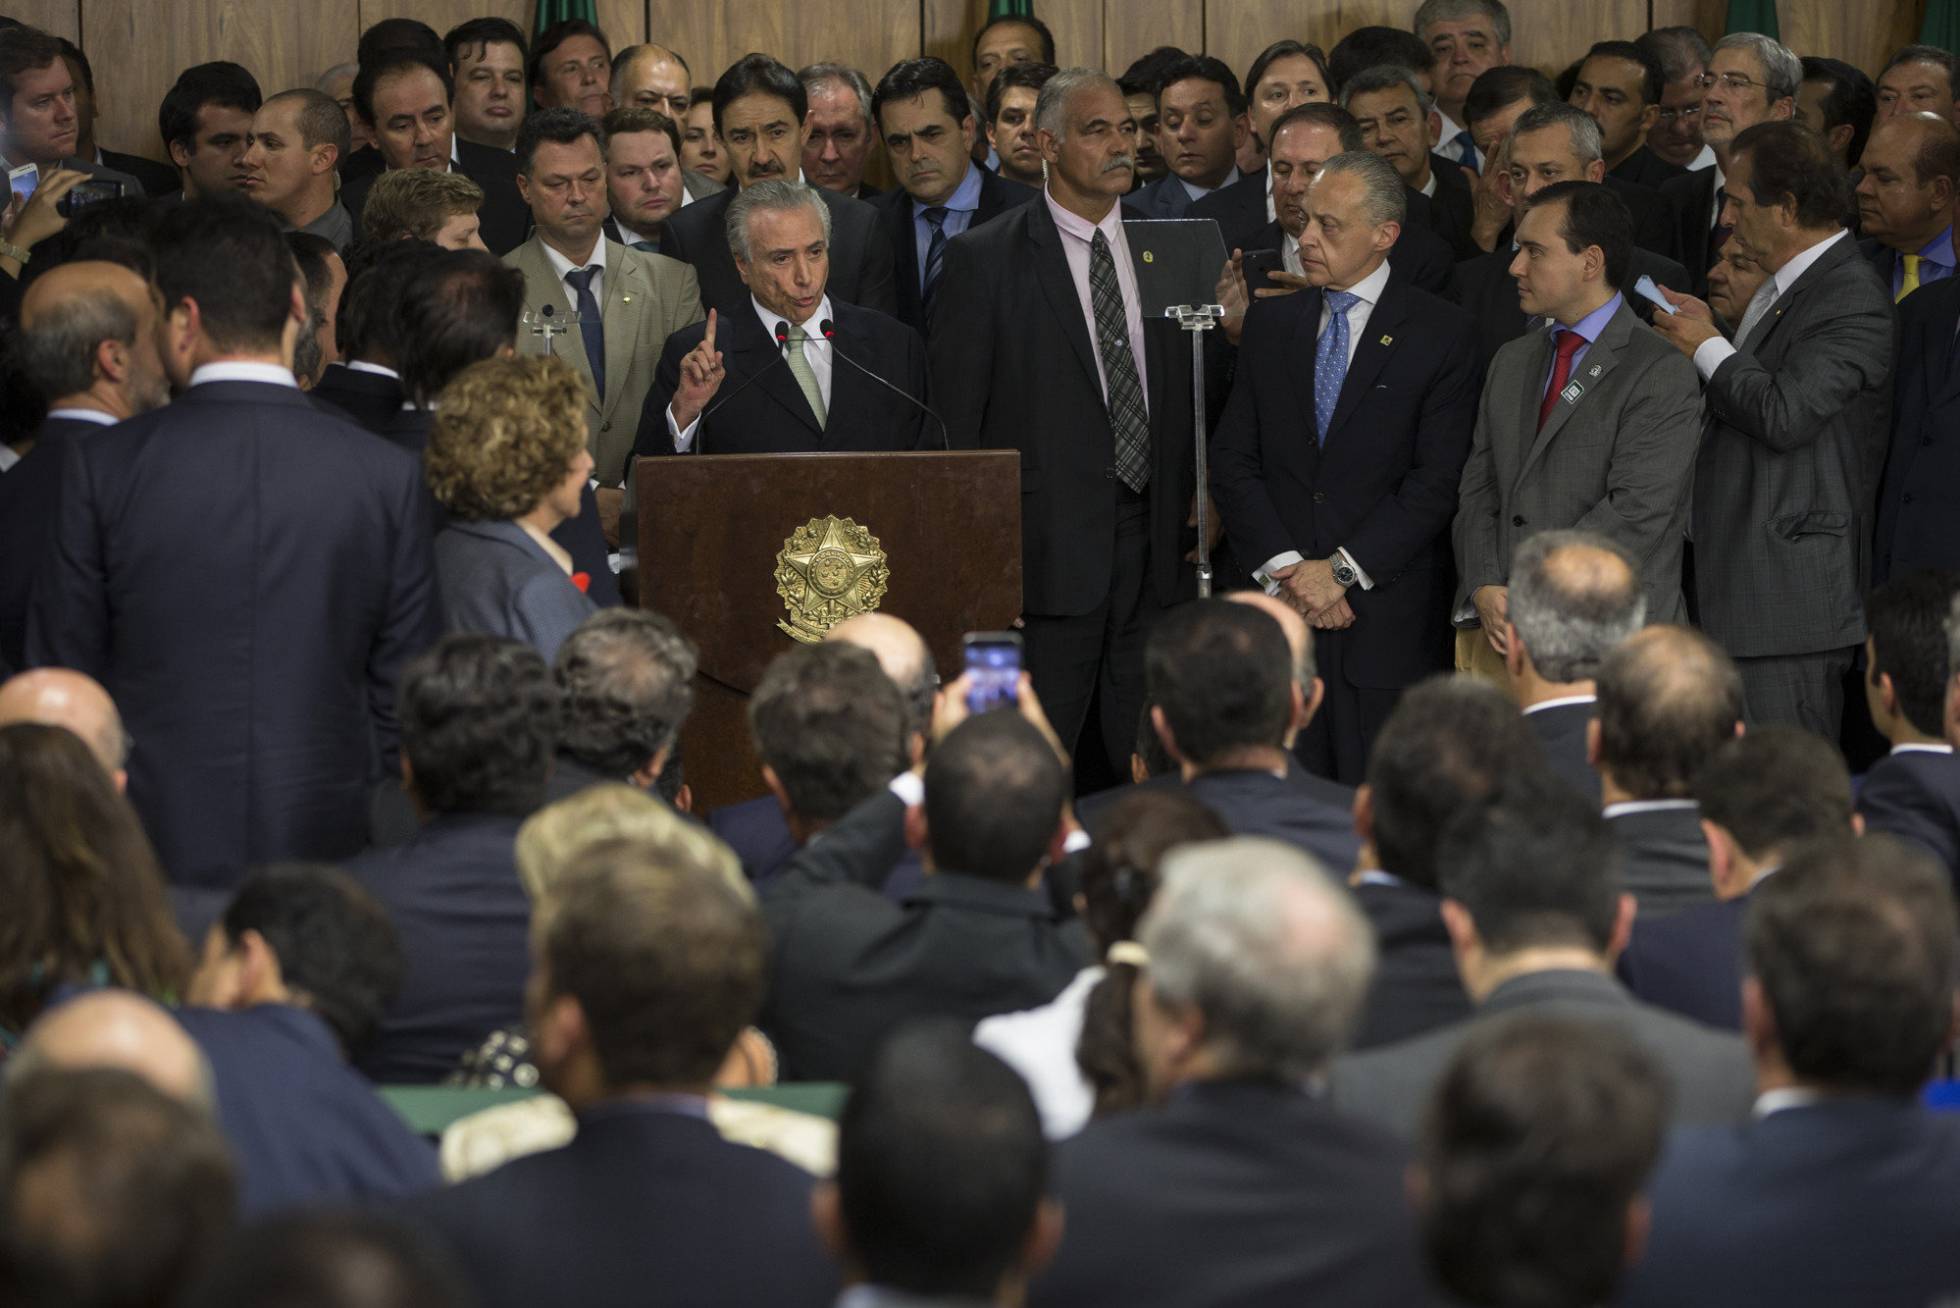 Michel Temer, rodeado de ministros e políticos, ao tomar posse como presidente interino no dia 12 de maio, em Brasília. FELIPE DANA/AP PHOTO (Reprodução do El País)